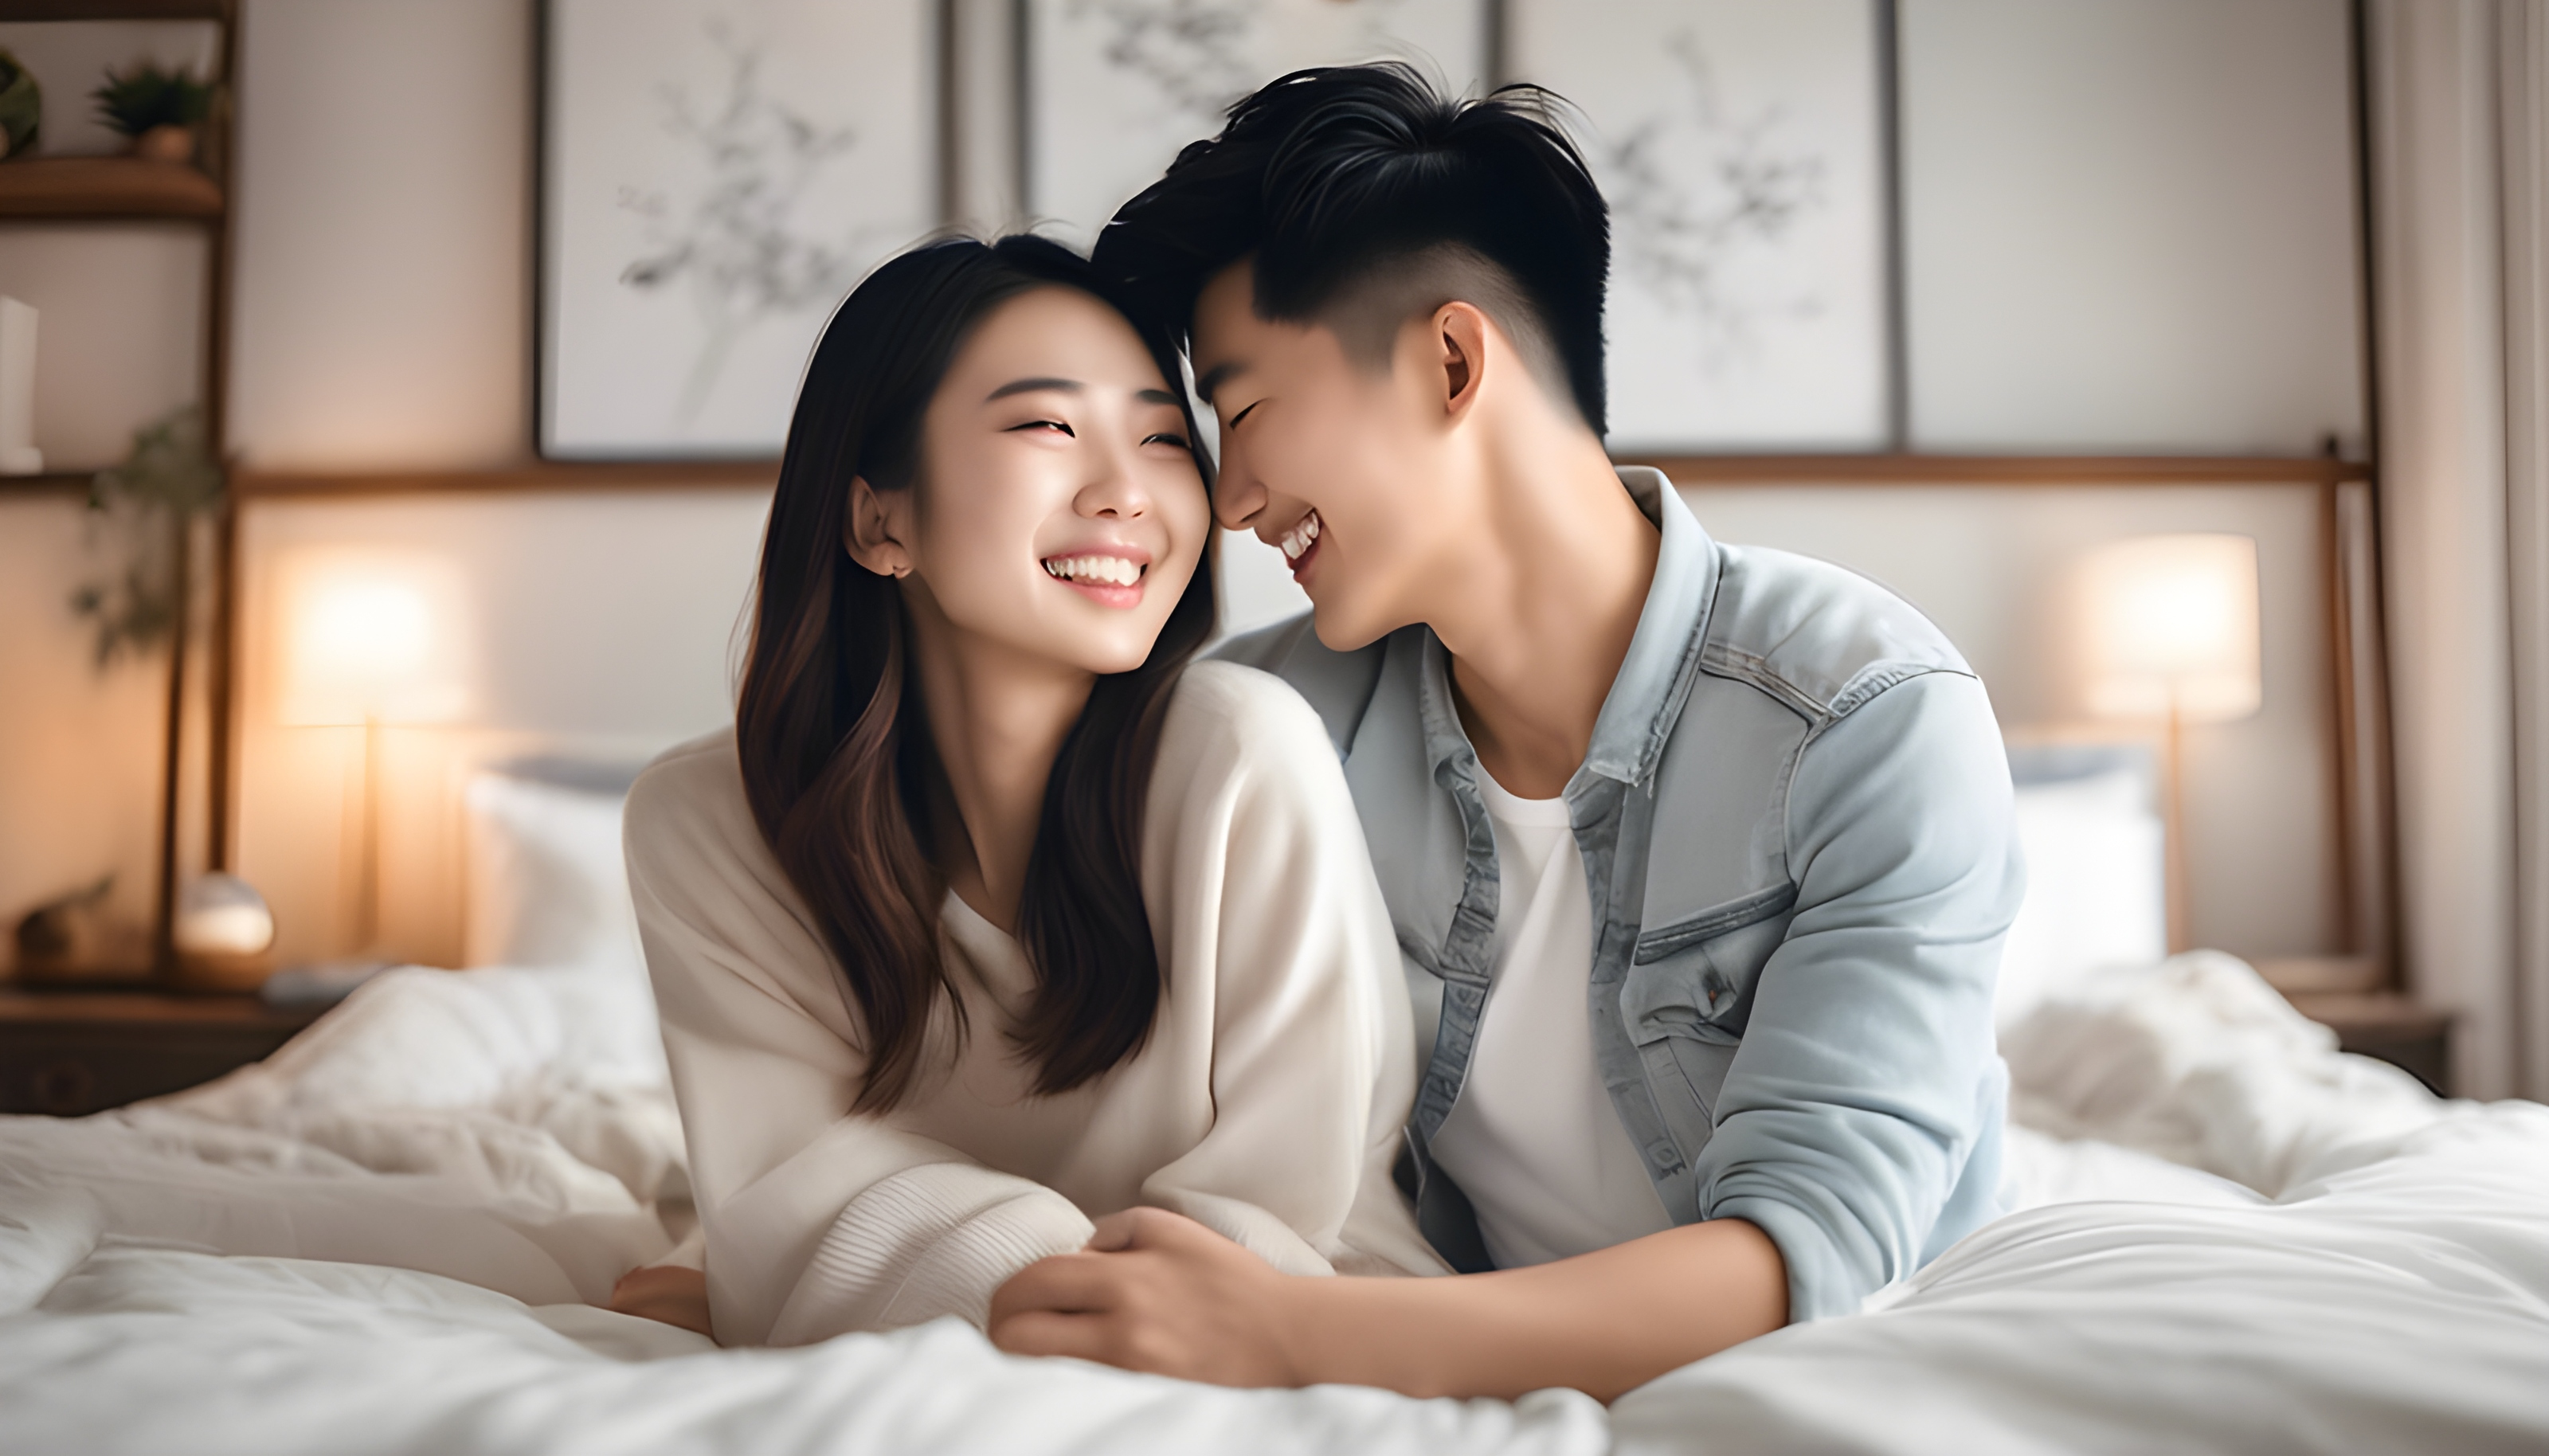 สร้างภาพถ่ายสมจริงคู่รักชาวจีน อายุประมาณ 20 ปี กำลังกอดกันอย่างรักใคร่และยิ้มแย้ม ภายในห้องนอนสีขาวสะอาดตา